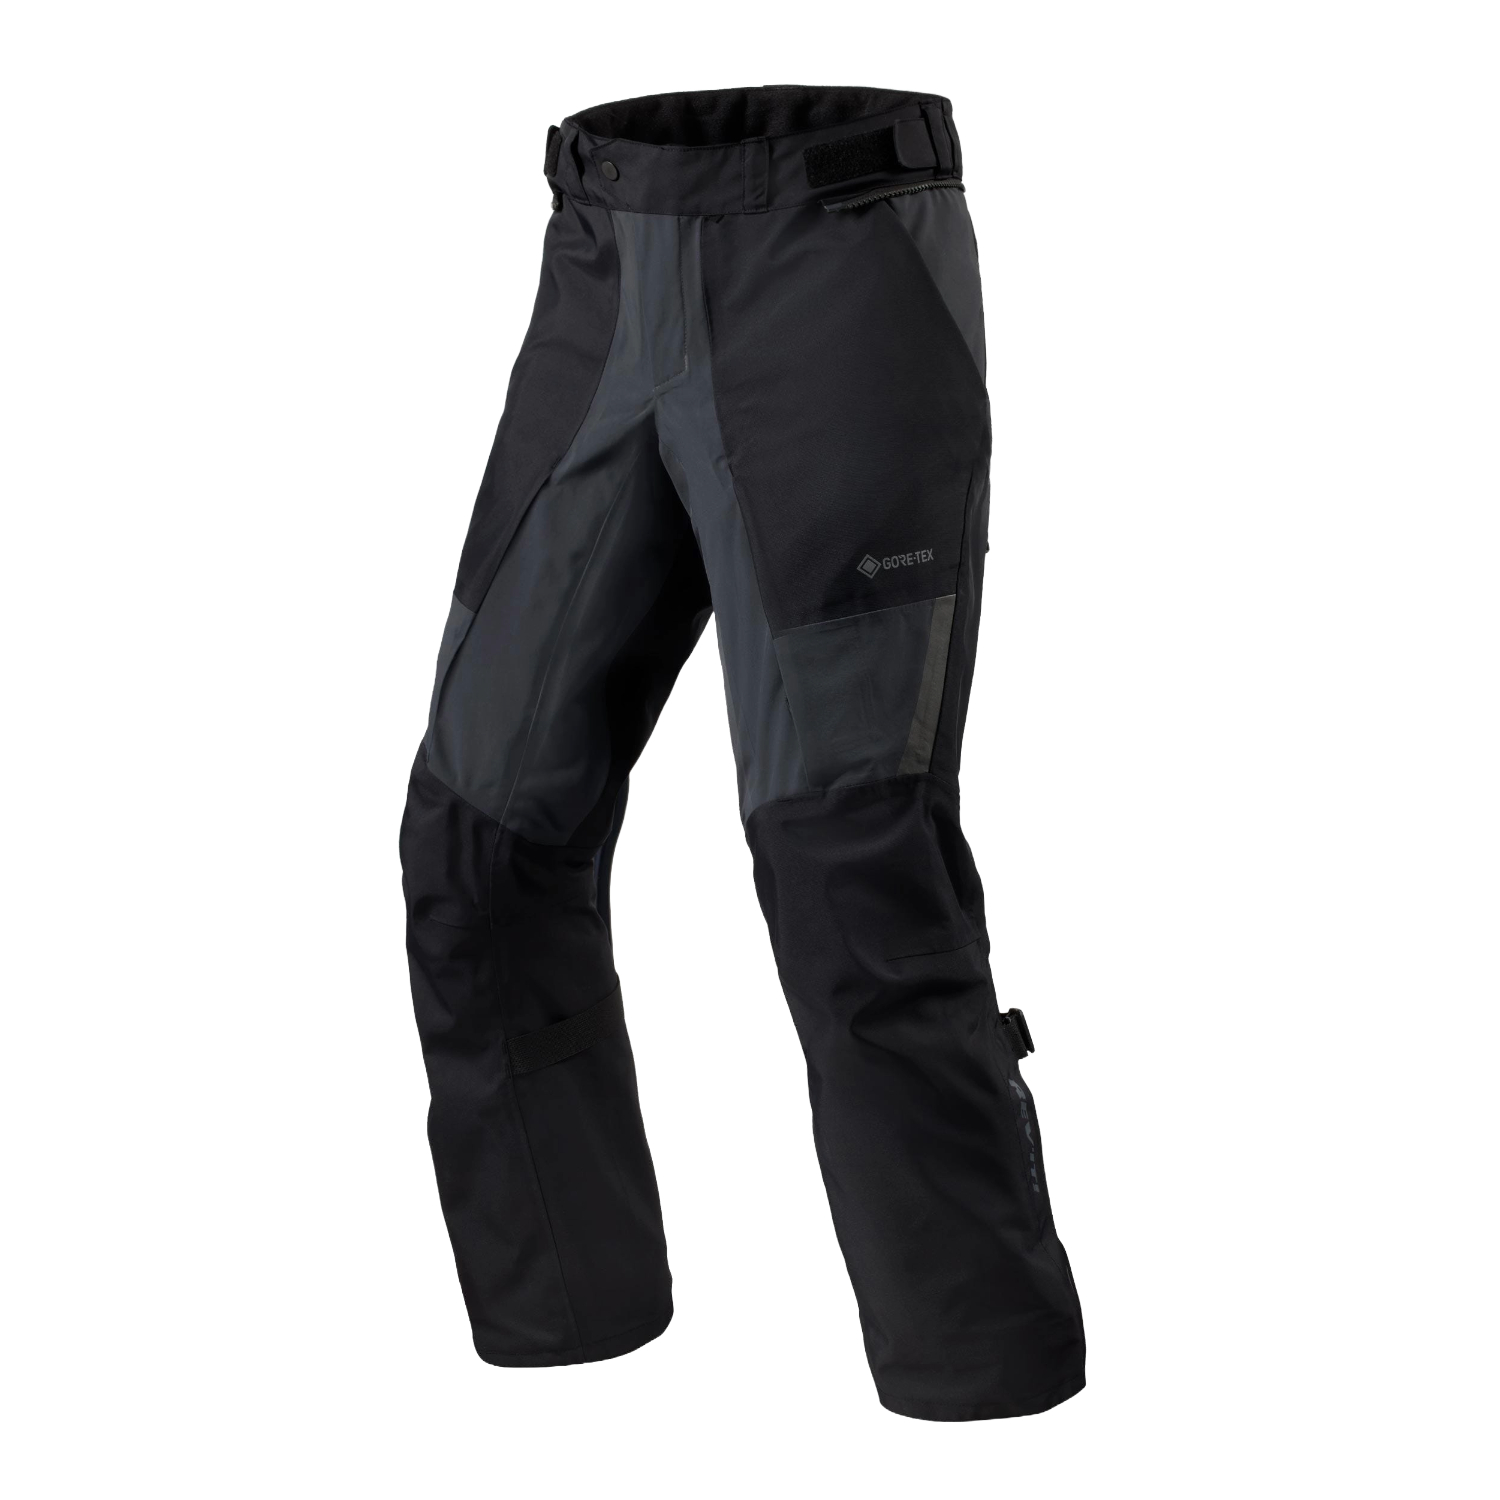 Image of REV'IT! Echelon GTX Pants Black Anthracite Standard Motorcycle Pants Size XL EN